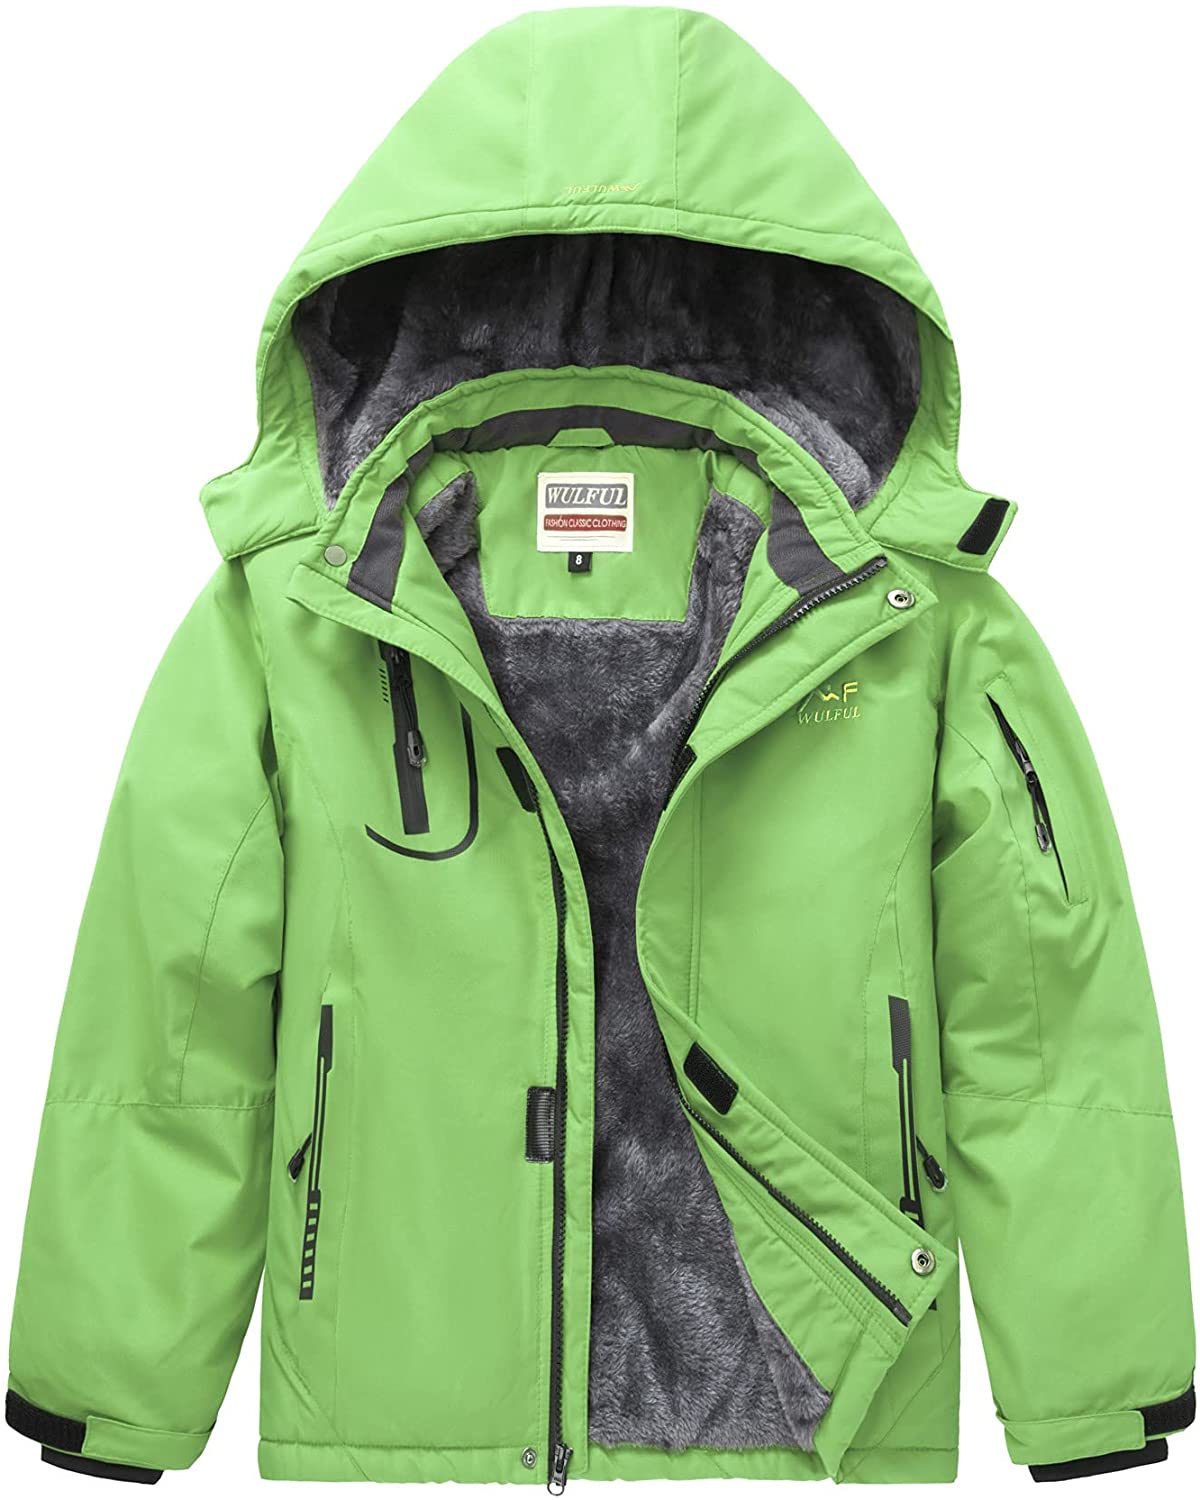 WULFUL Boy's Waterproof Ski Jacket Warm Fleece Hooded Windproof